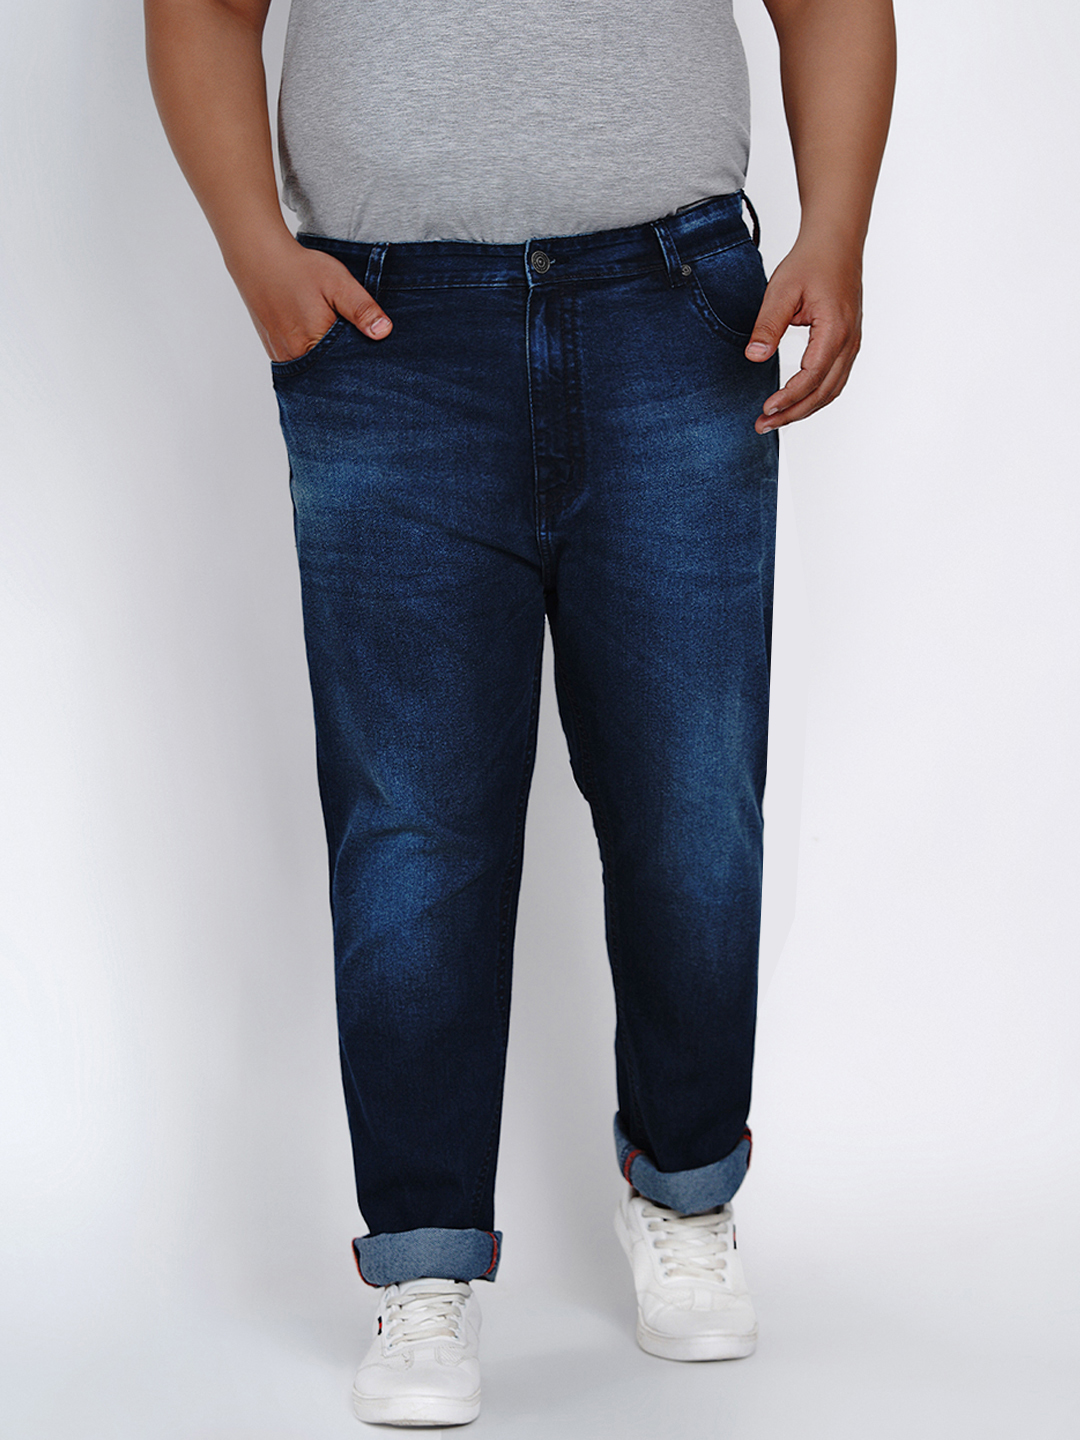 bottomwear/jeans/JPJ2014/jpj2014-2.jpg